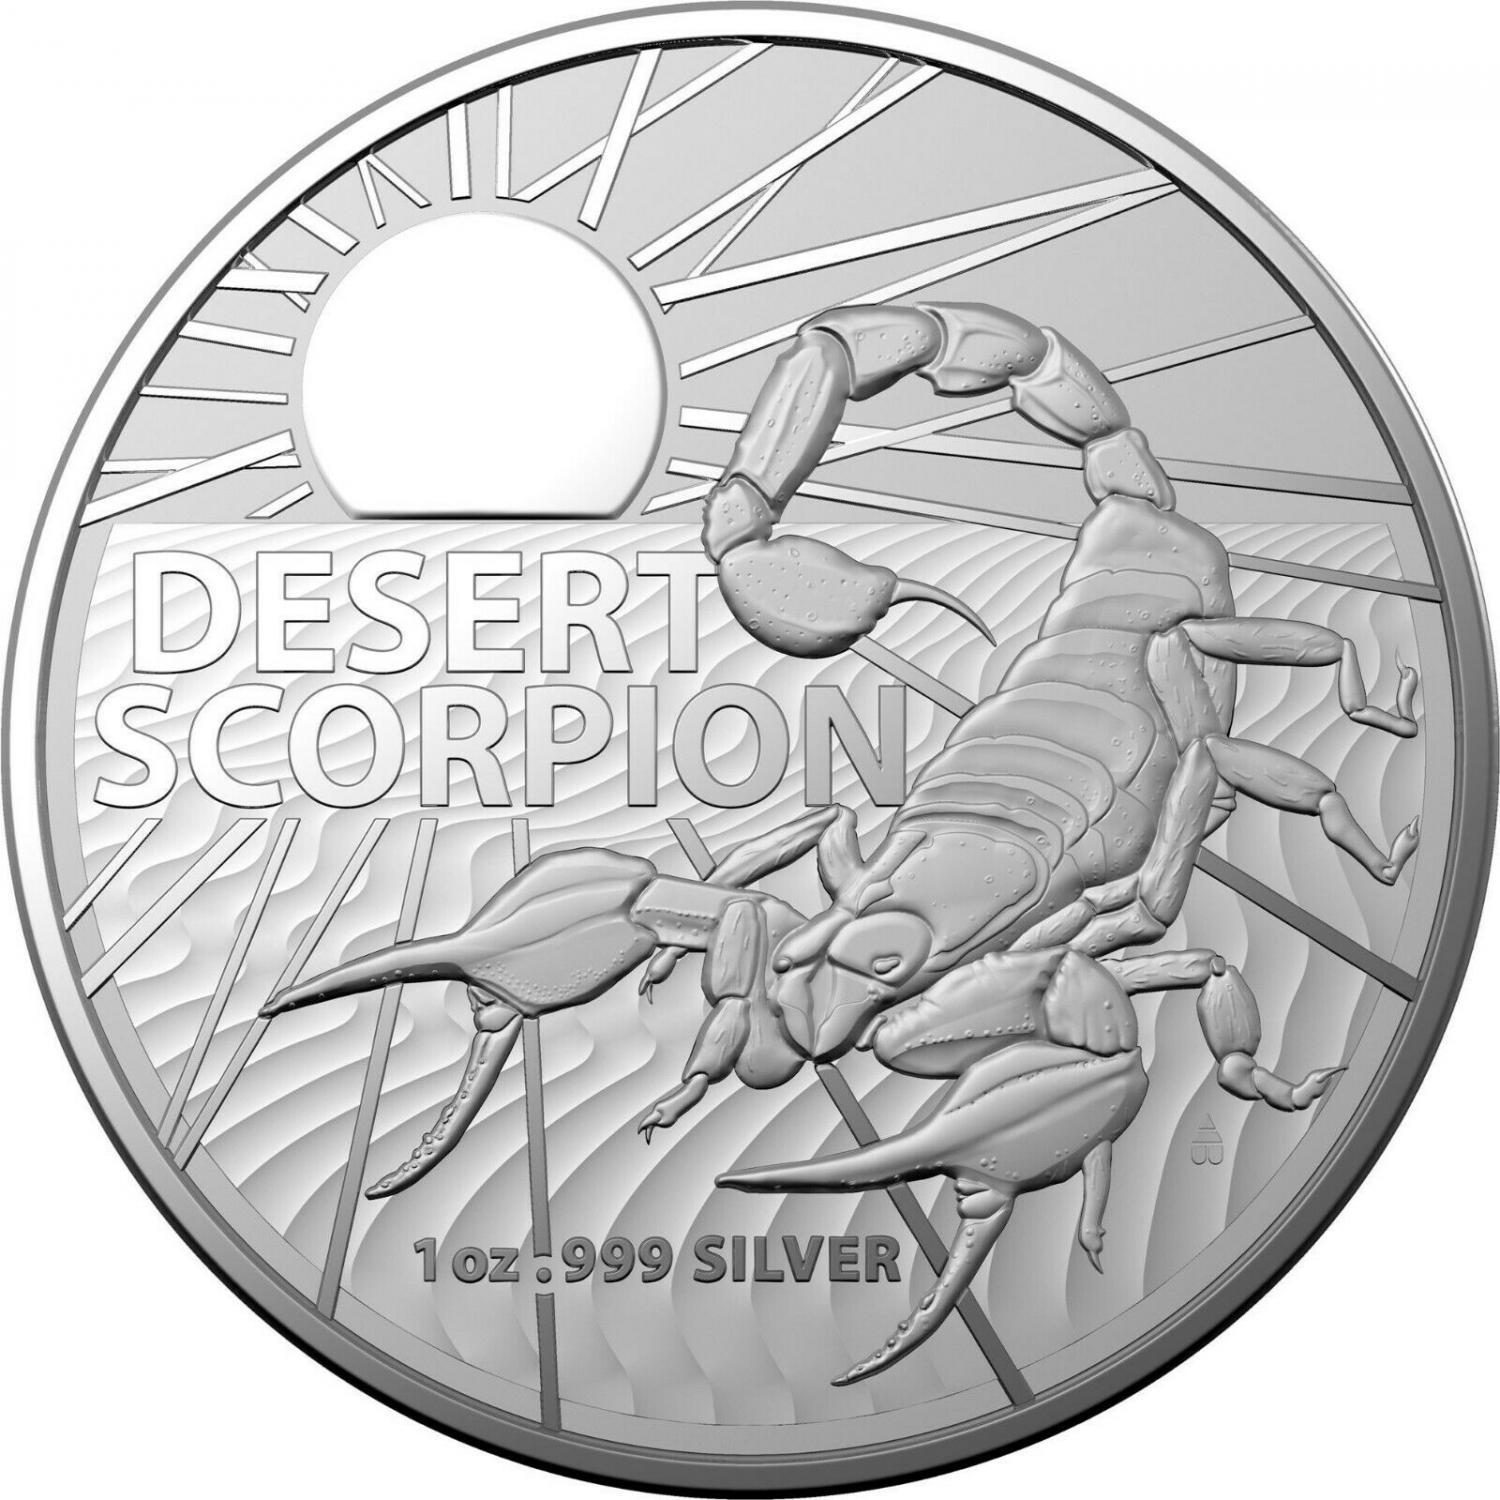 Thumbnail for 2022 $1 Australian Desert Scorpion 1oz Silver Bullion Coin in Capsule 